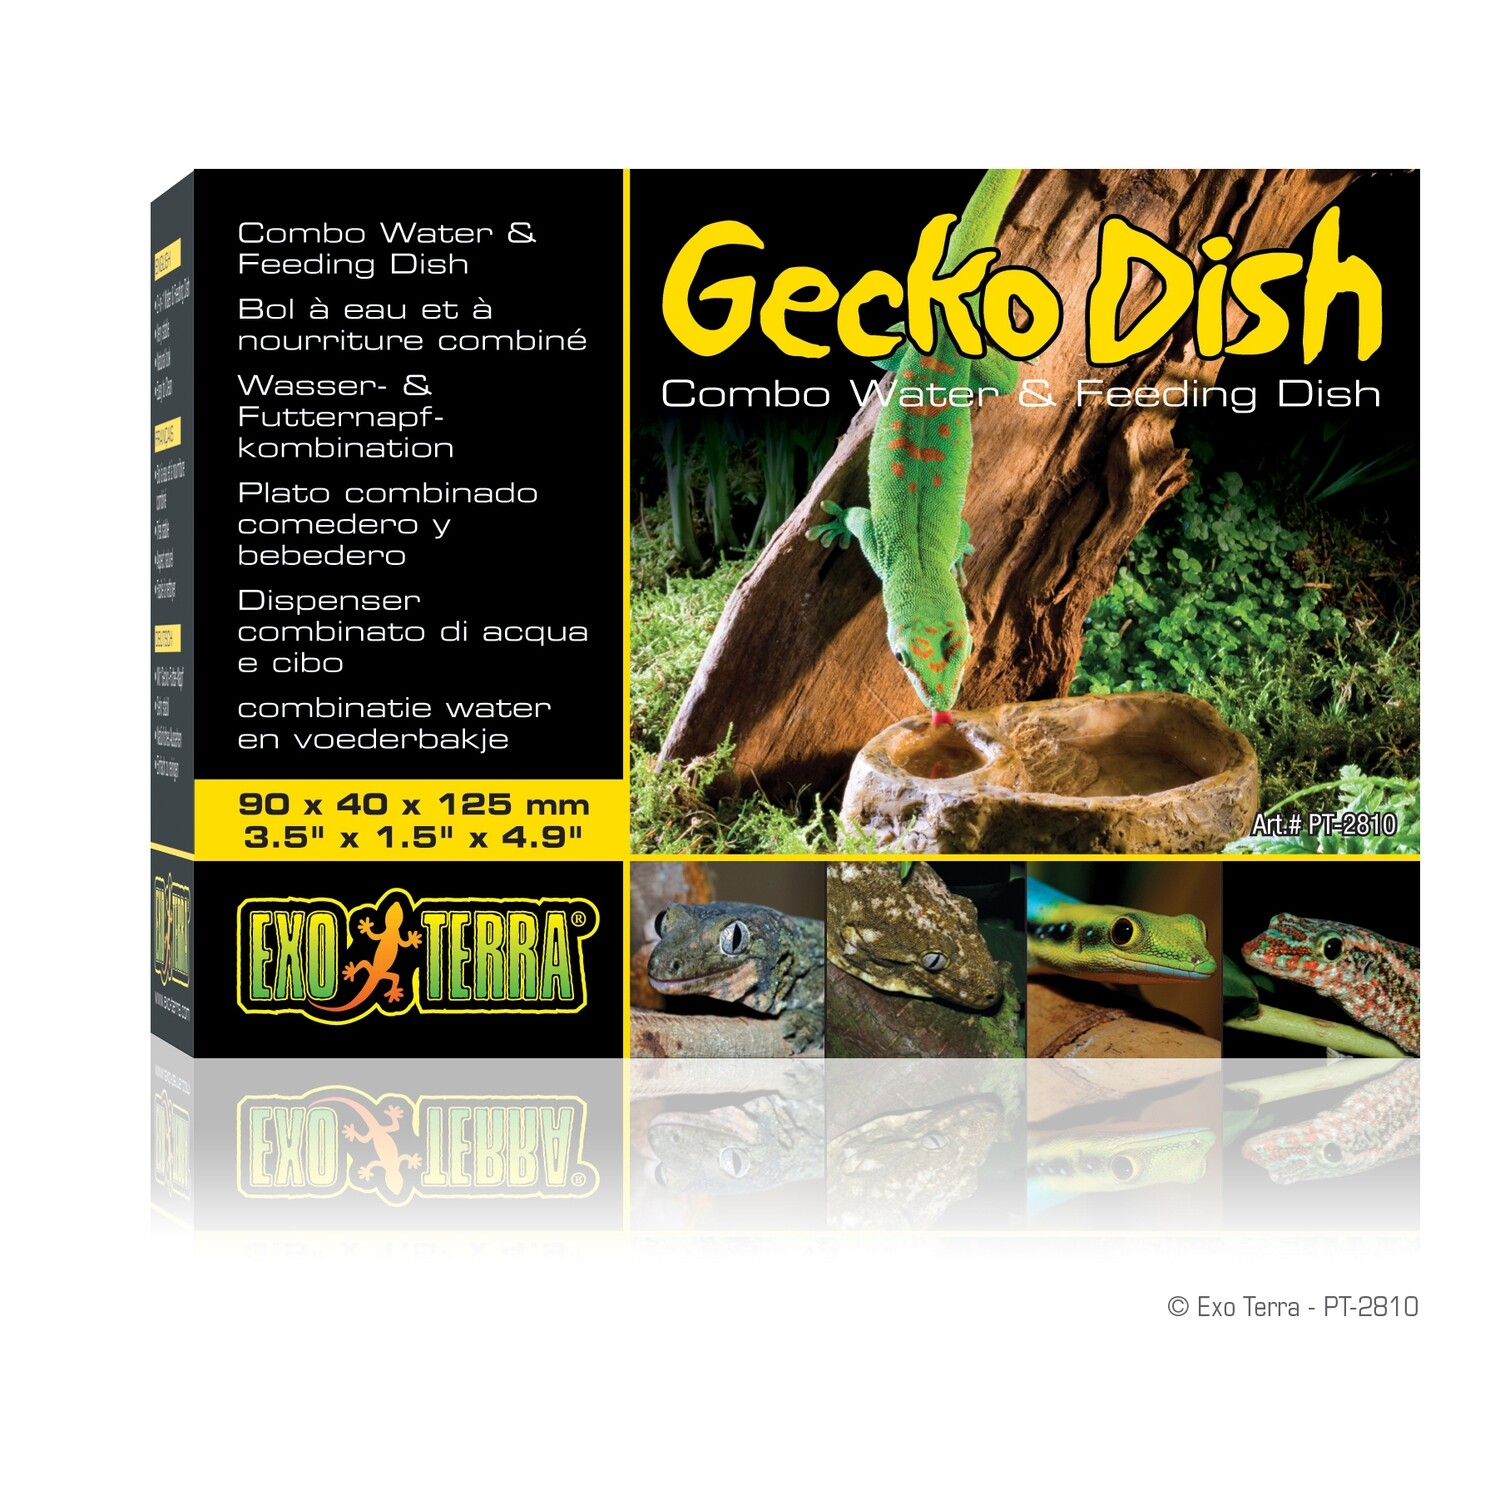 Exo Terra Gecko Dish Combo - 90 x 40 x 125 mm (3.5in x 1.5in x 4.9in)